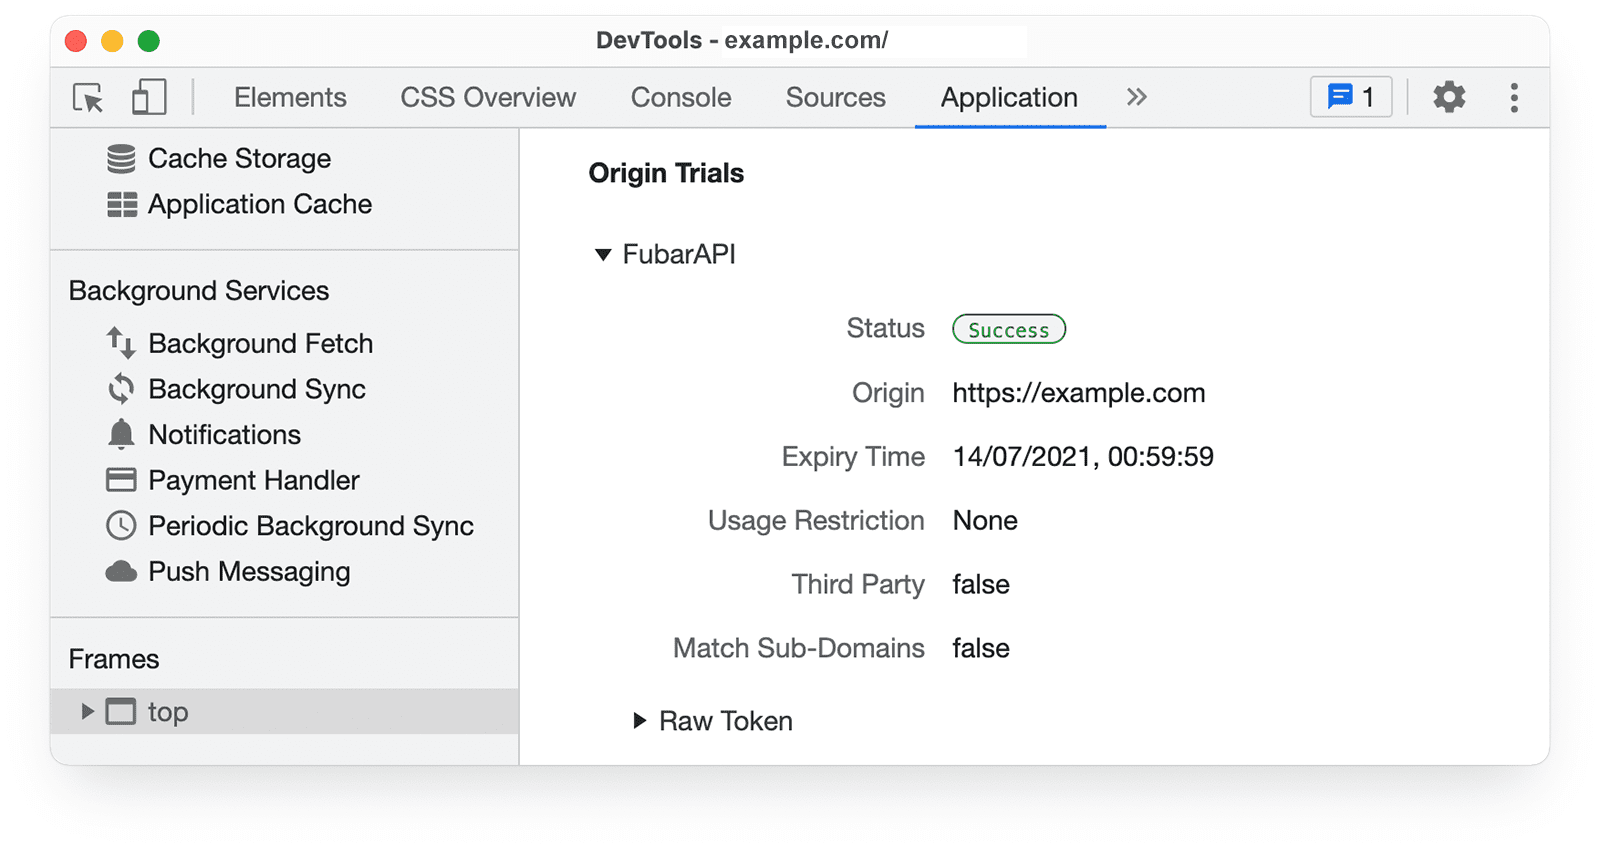 Chrome DevTools 
オリジン トライアルの情報を [Application] パネルで確認できます。